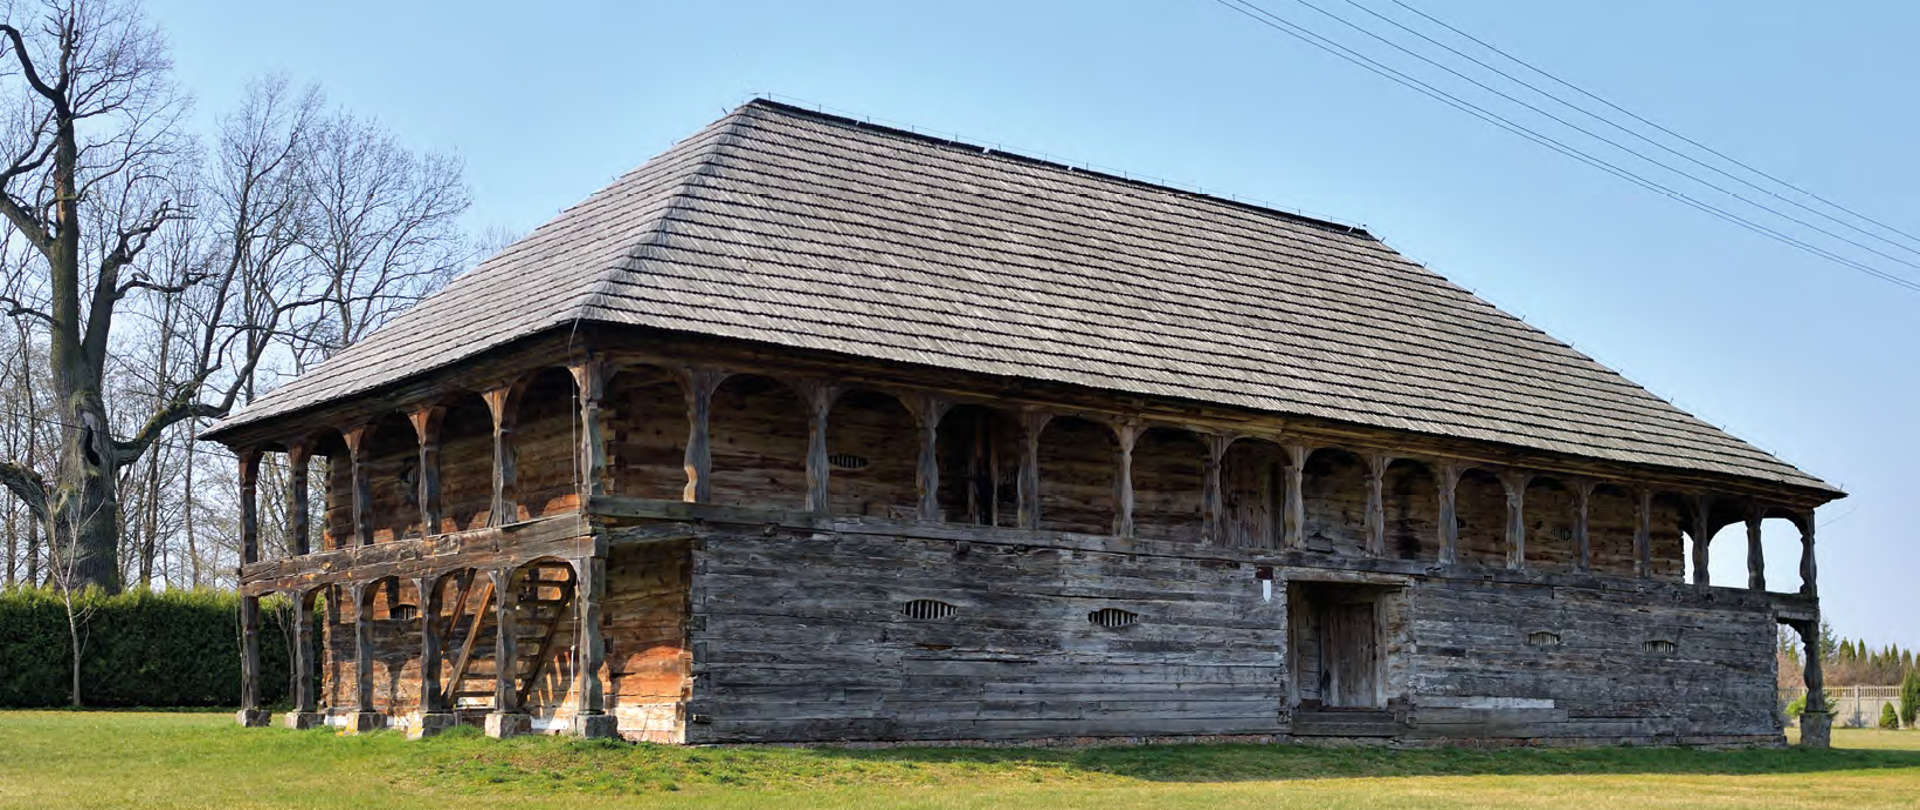 Zdjęcie przedstawia unikatowy, drewniany spichlerz z XVIII w. znajdujący się w Gminie Górzno. Drewniany, dwukondygnacyjny budynek w konstrukcji zrębowej wzniesiony jest na planie prostokąta. Posiada kopertowy dach kryty gontem.